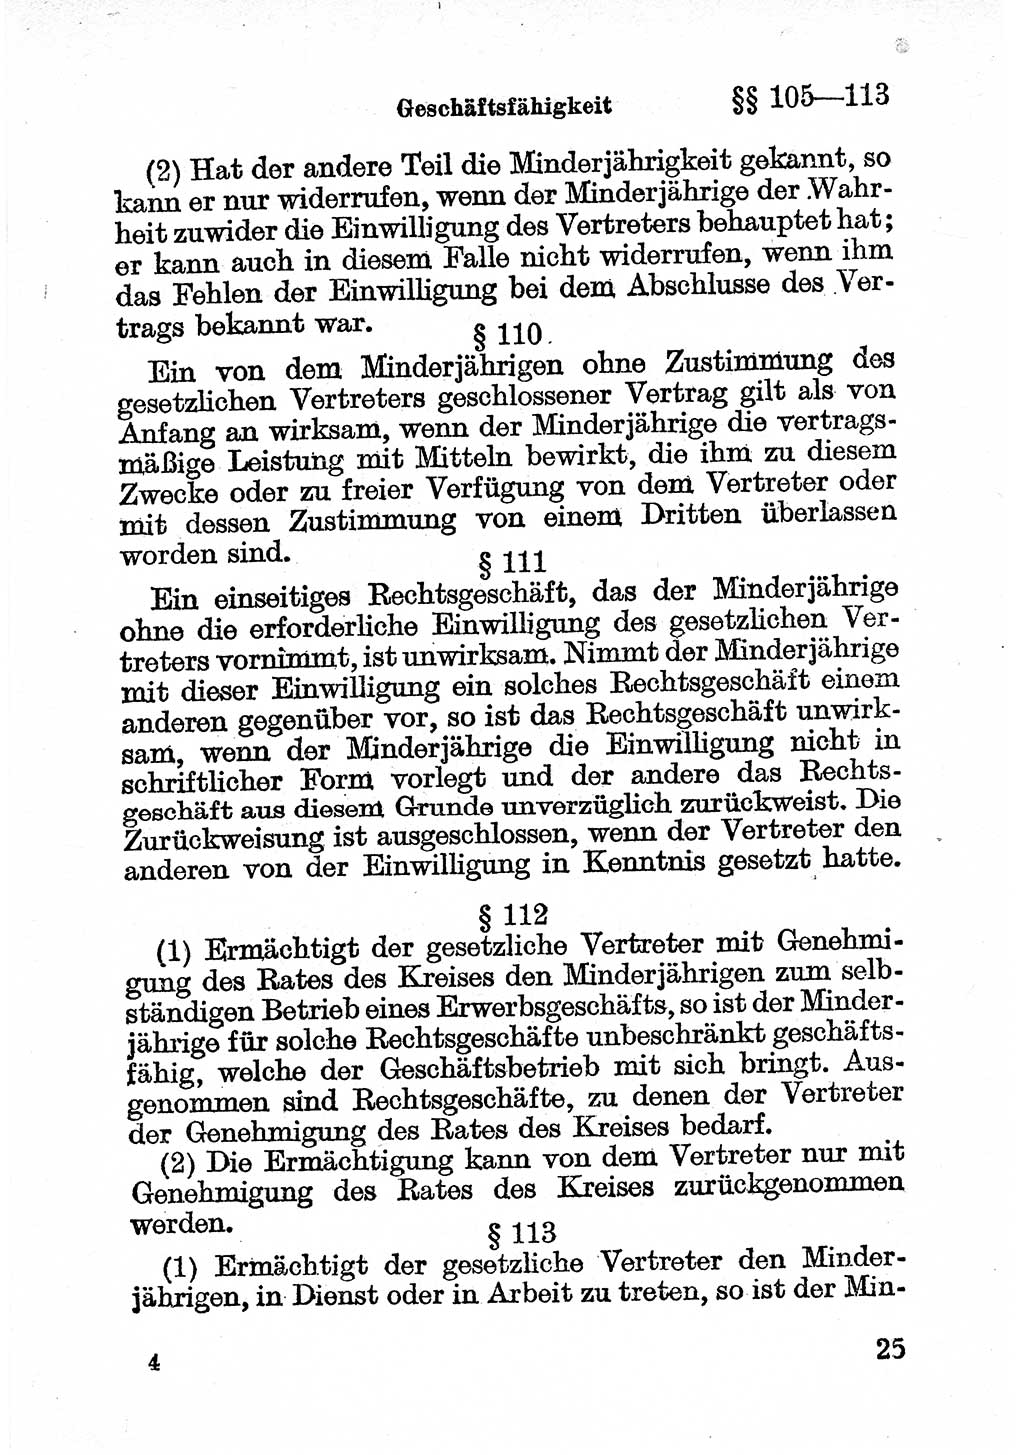 Bürgerliches Gesetzbuch (BGB) nebst wichtigen Nebengesetzen [Deutsche Demokratische Republik (DDR)] 1956, Seite 25 (BGB Nebenges. DDR 1956, S. 25)